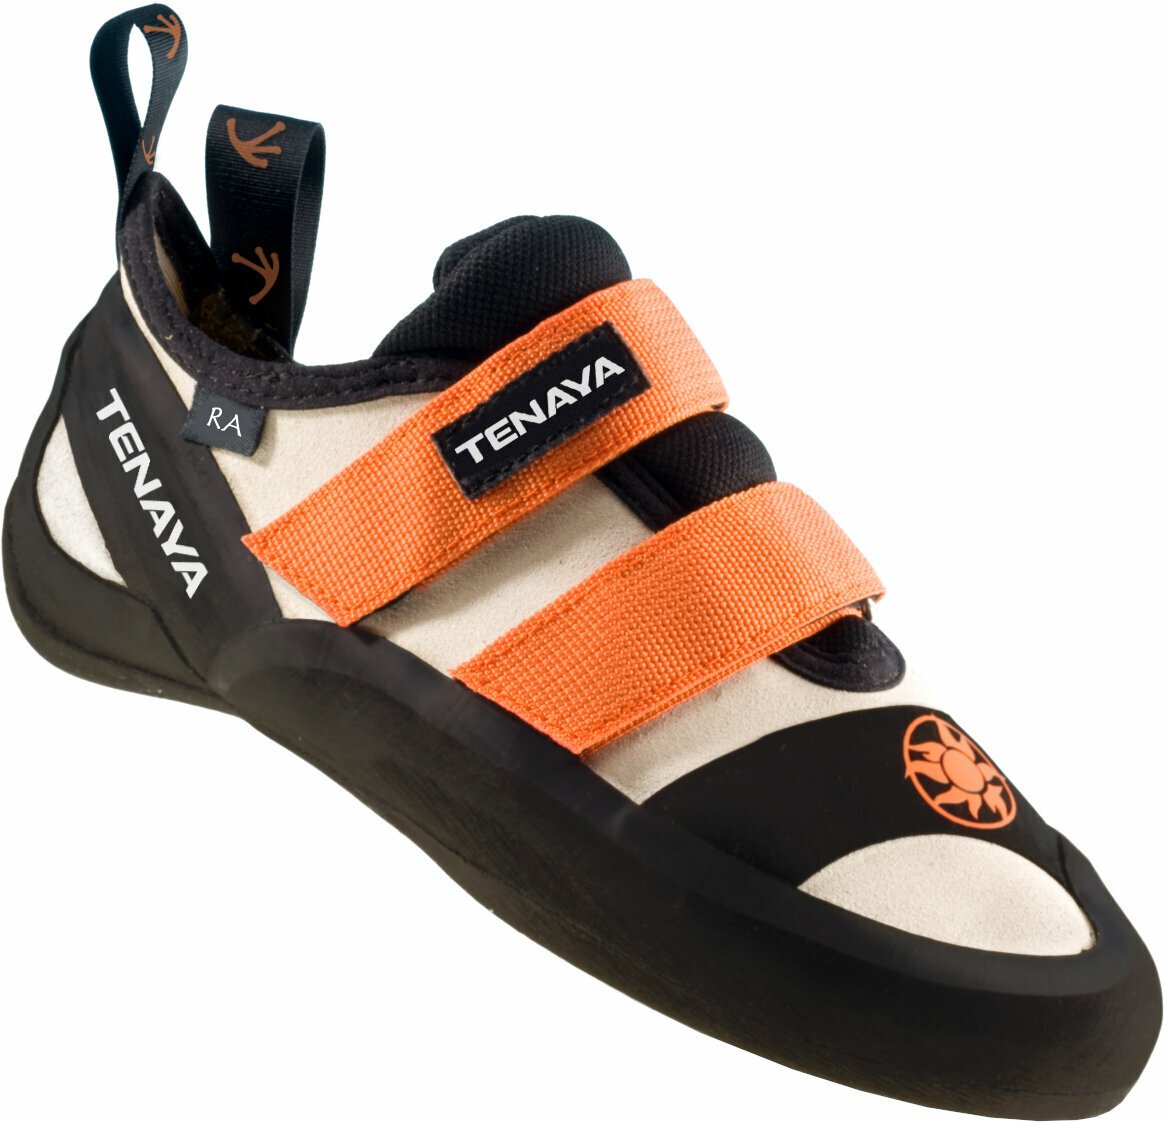 Cipele z penjanje Tenaya Ra Orange 43,2 Cipele z penjanje